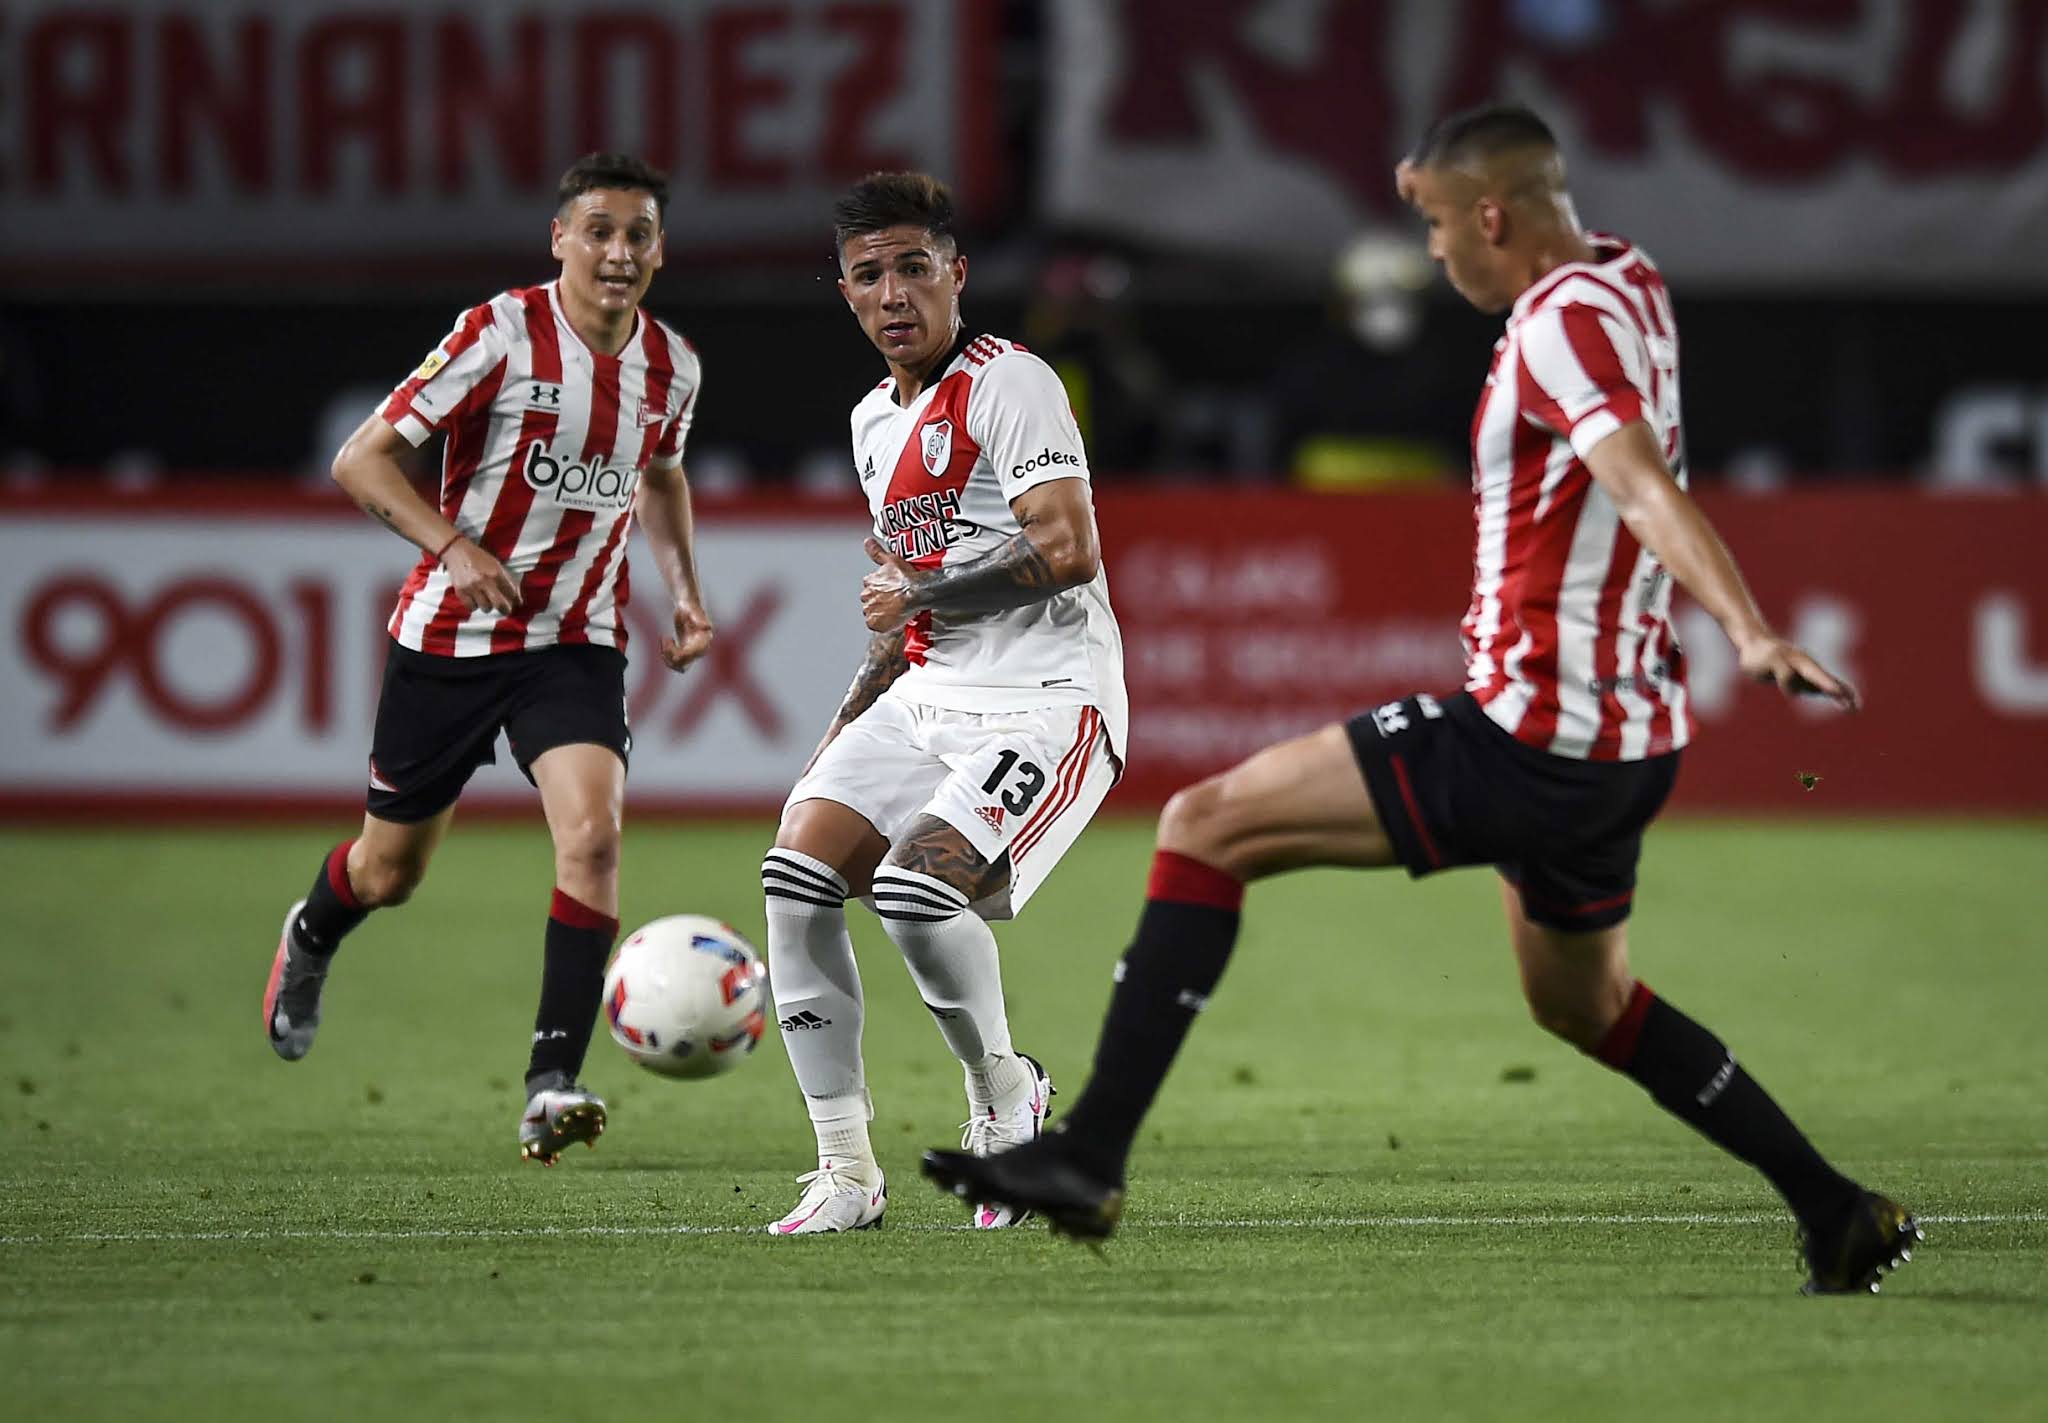 River Plate no pudo hilvanar su novena victoria consecutiva y empató en La Plata 1 a 1 con Estudiantes, con goles de Robert Rojas en el final de la primera parte y Leandro Díaz, que igualó para el local en el inicio del segundo tiempo.